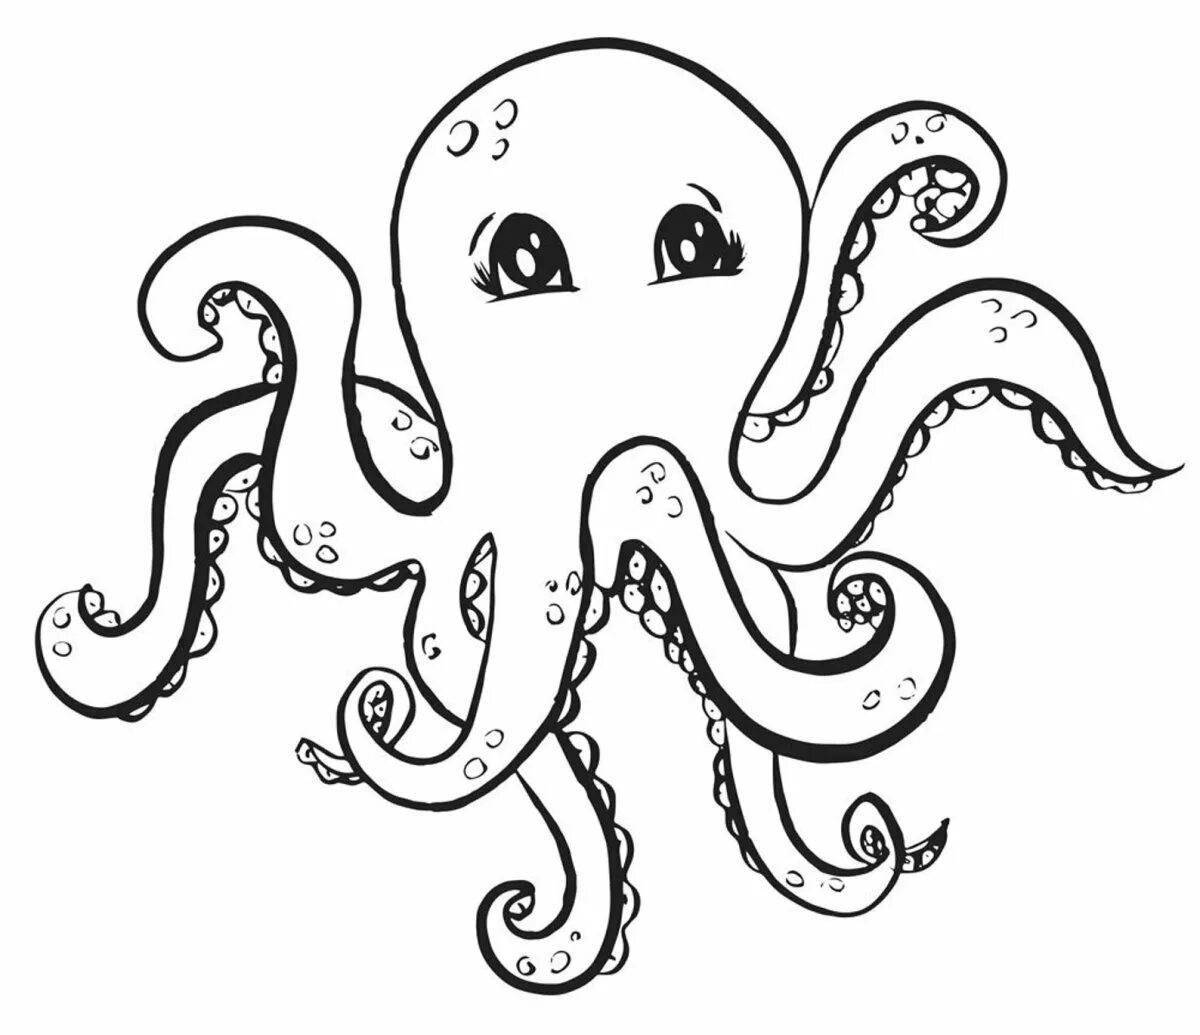 Coloring book octopus for preschoolers